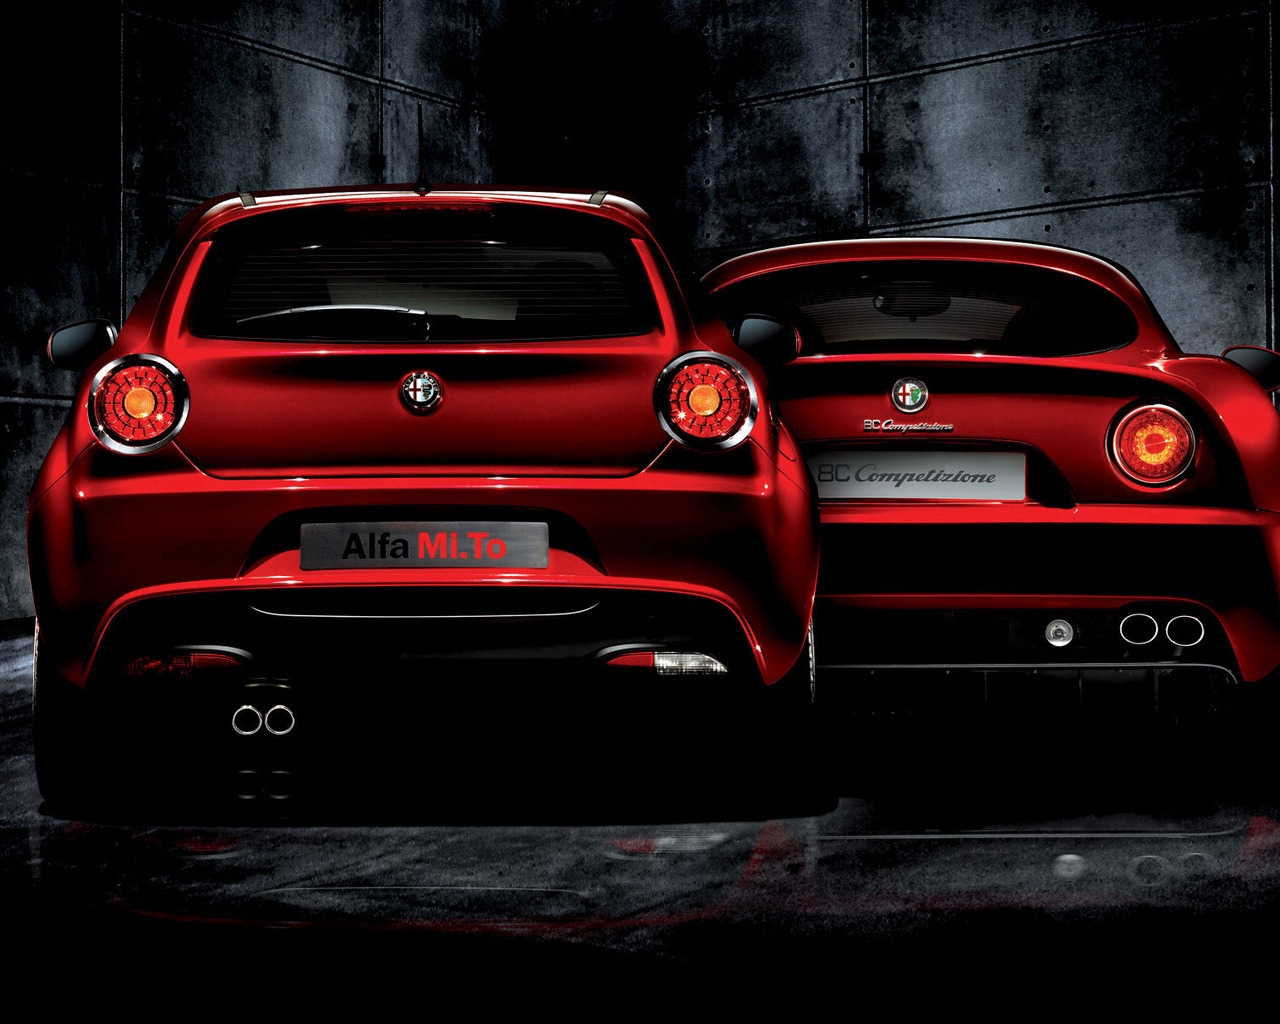 Alfa Romeo Mi To and 8C Competizione for 1280 x 1024 resolution